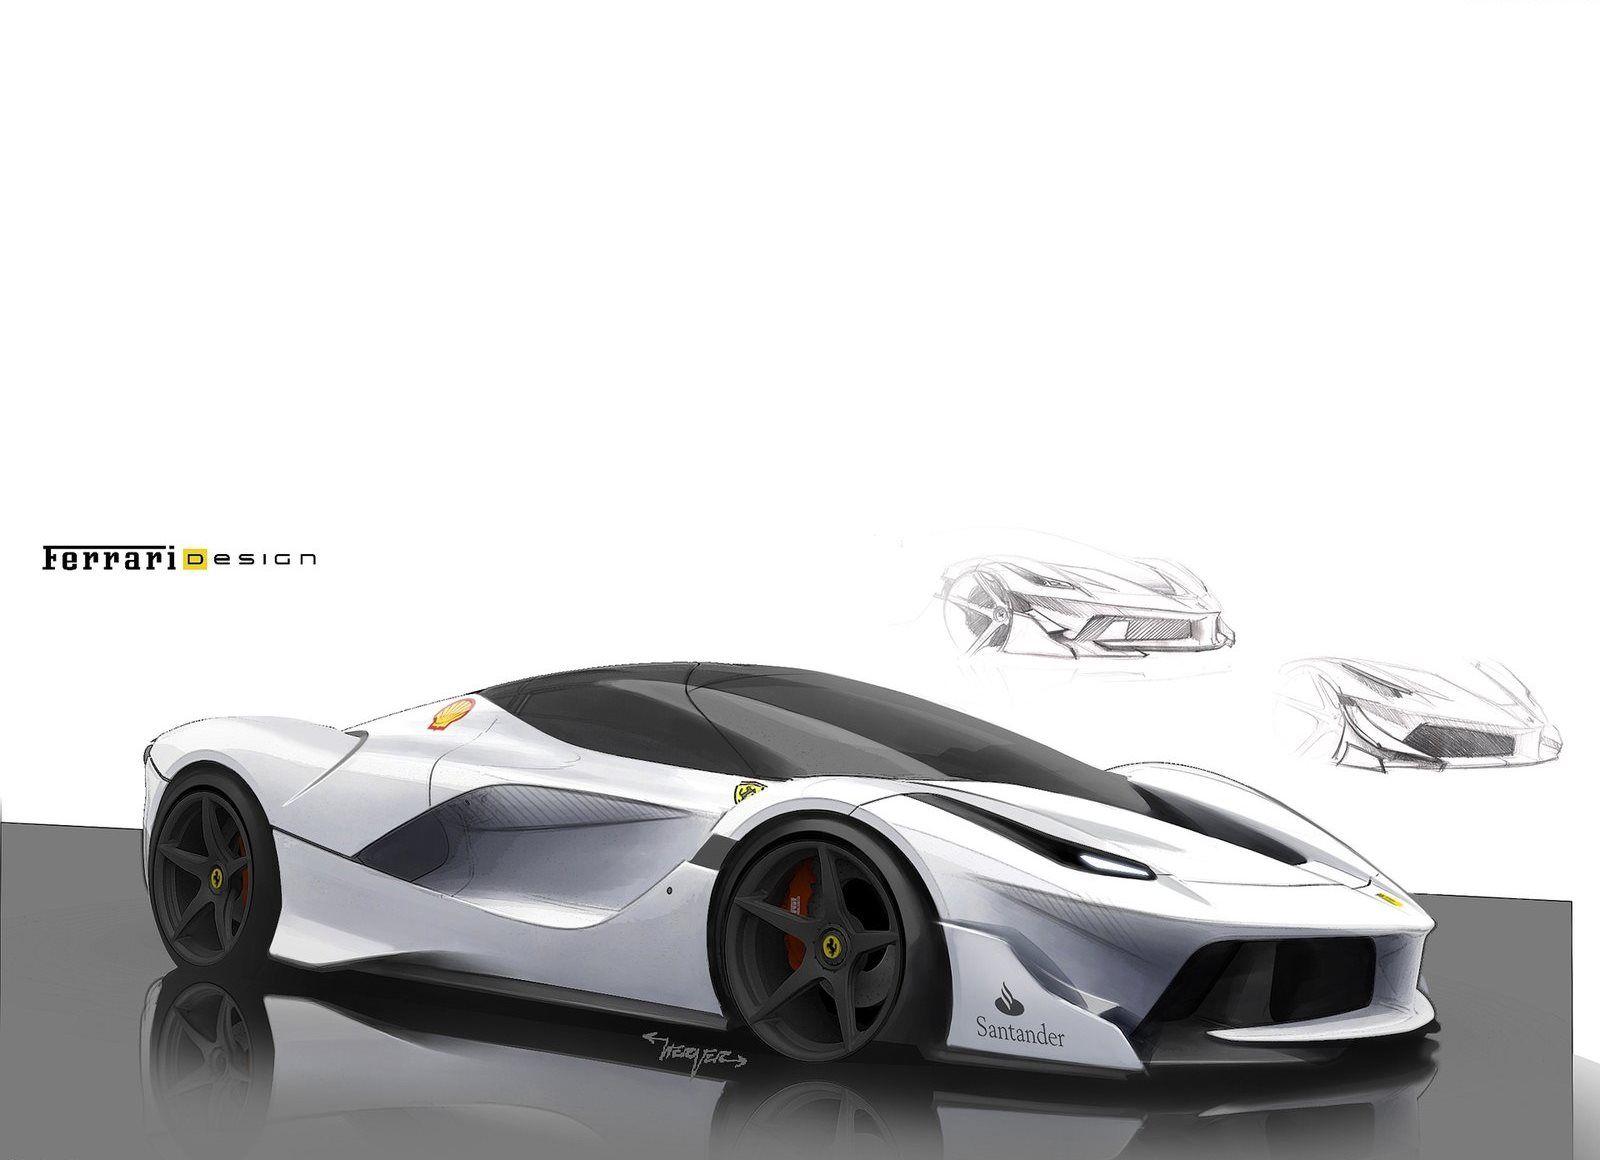 Free Download 2K Wallpapers of ferrari car, Ferrari